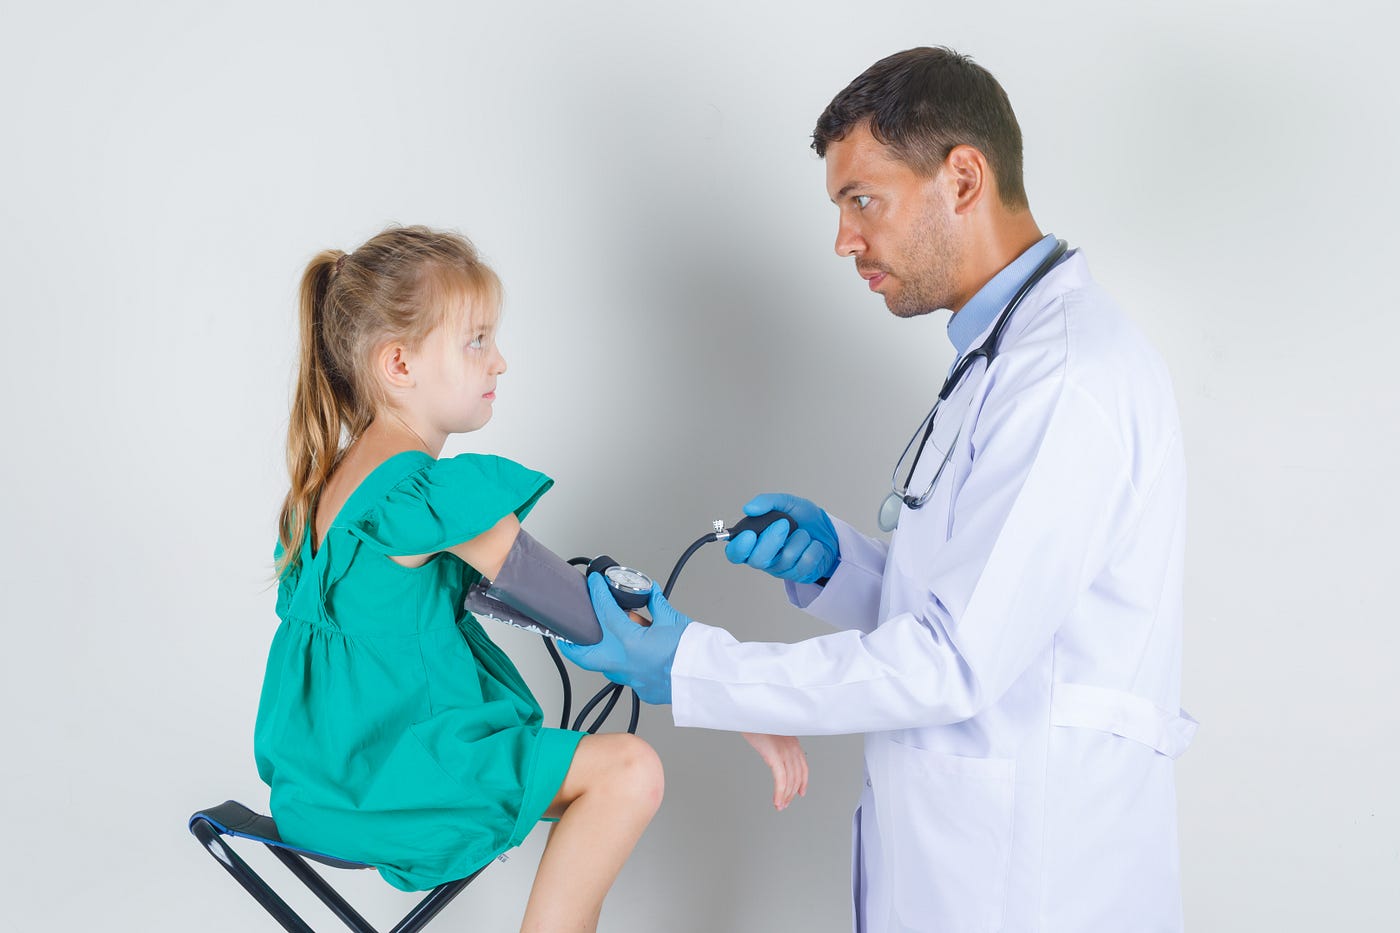 افضل دكتور عظام اطفال. من هو افضل دكتور عظام اطفال؟ تتعدد… | by drs.egypt |  Medium